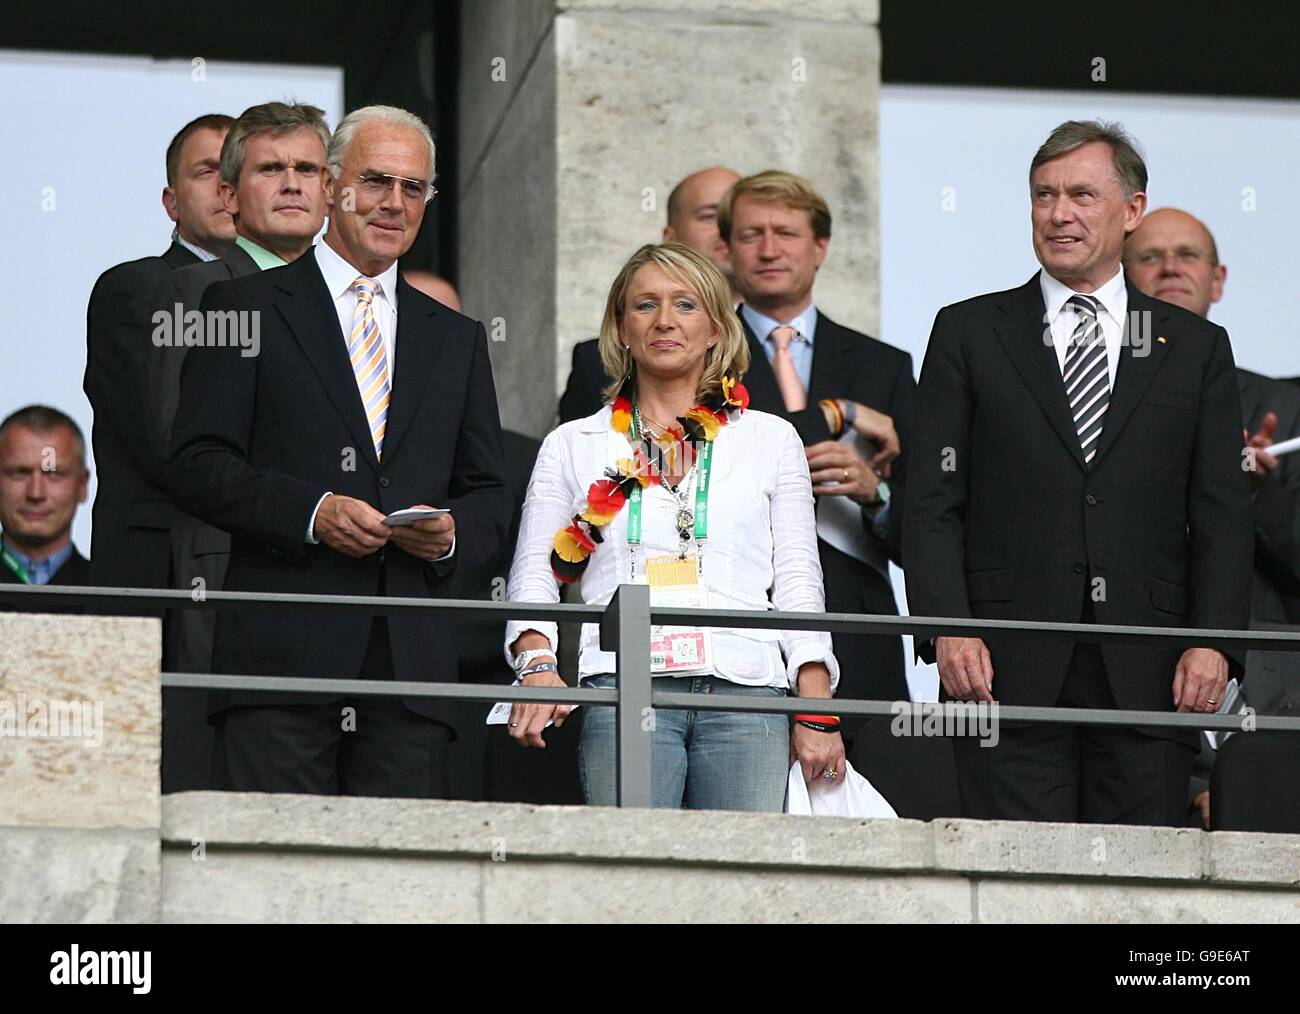 Capo del comitato organizzativo per la Coppa del mondo di calcio 2006 in Germania, Franz Beckenbauer (L) con la moglie Heidi Foto Stock